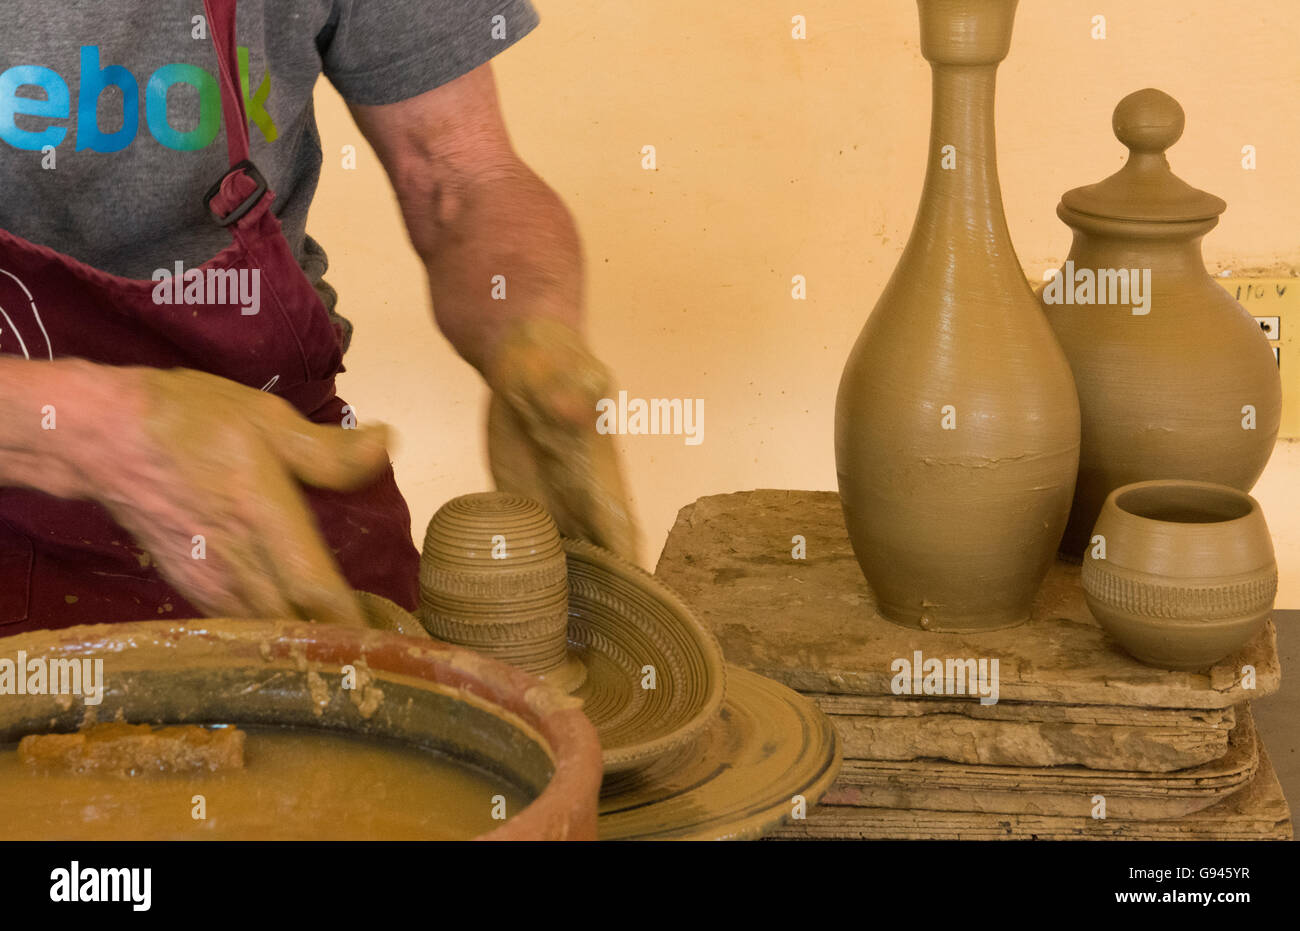 Trinidad Kuba Ton Keramik Geschäft mit Mann arbeitet an der Töpferscheibe  Kunstwerk Keramik erstellen Stockfotografie - Alamy